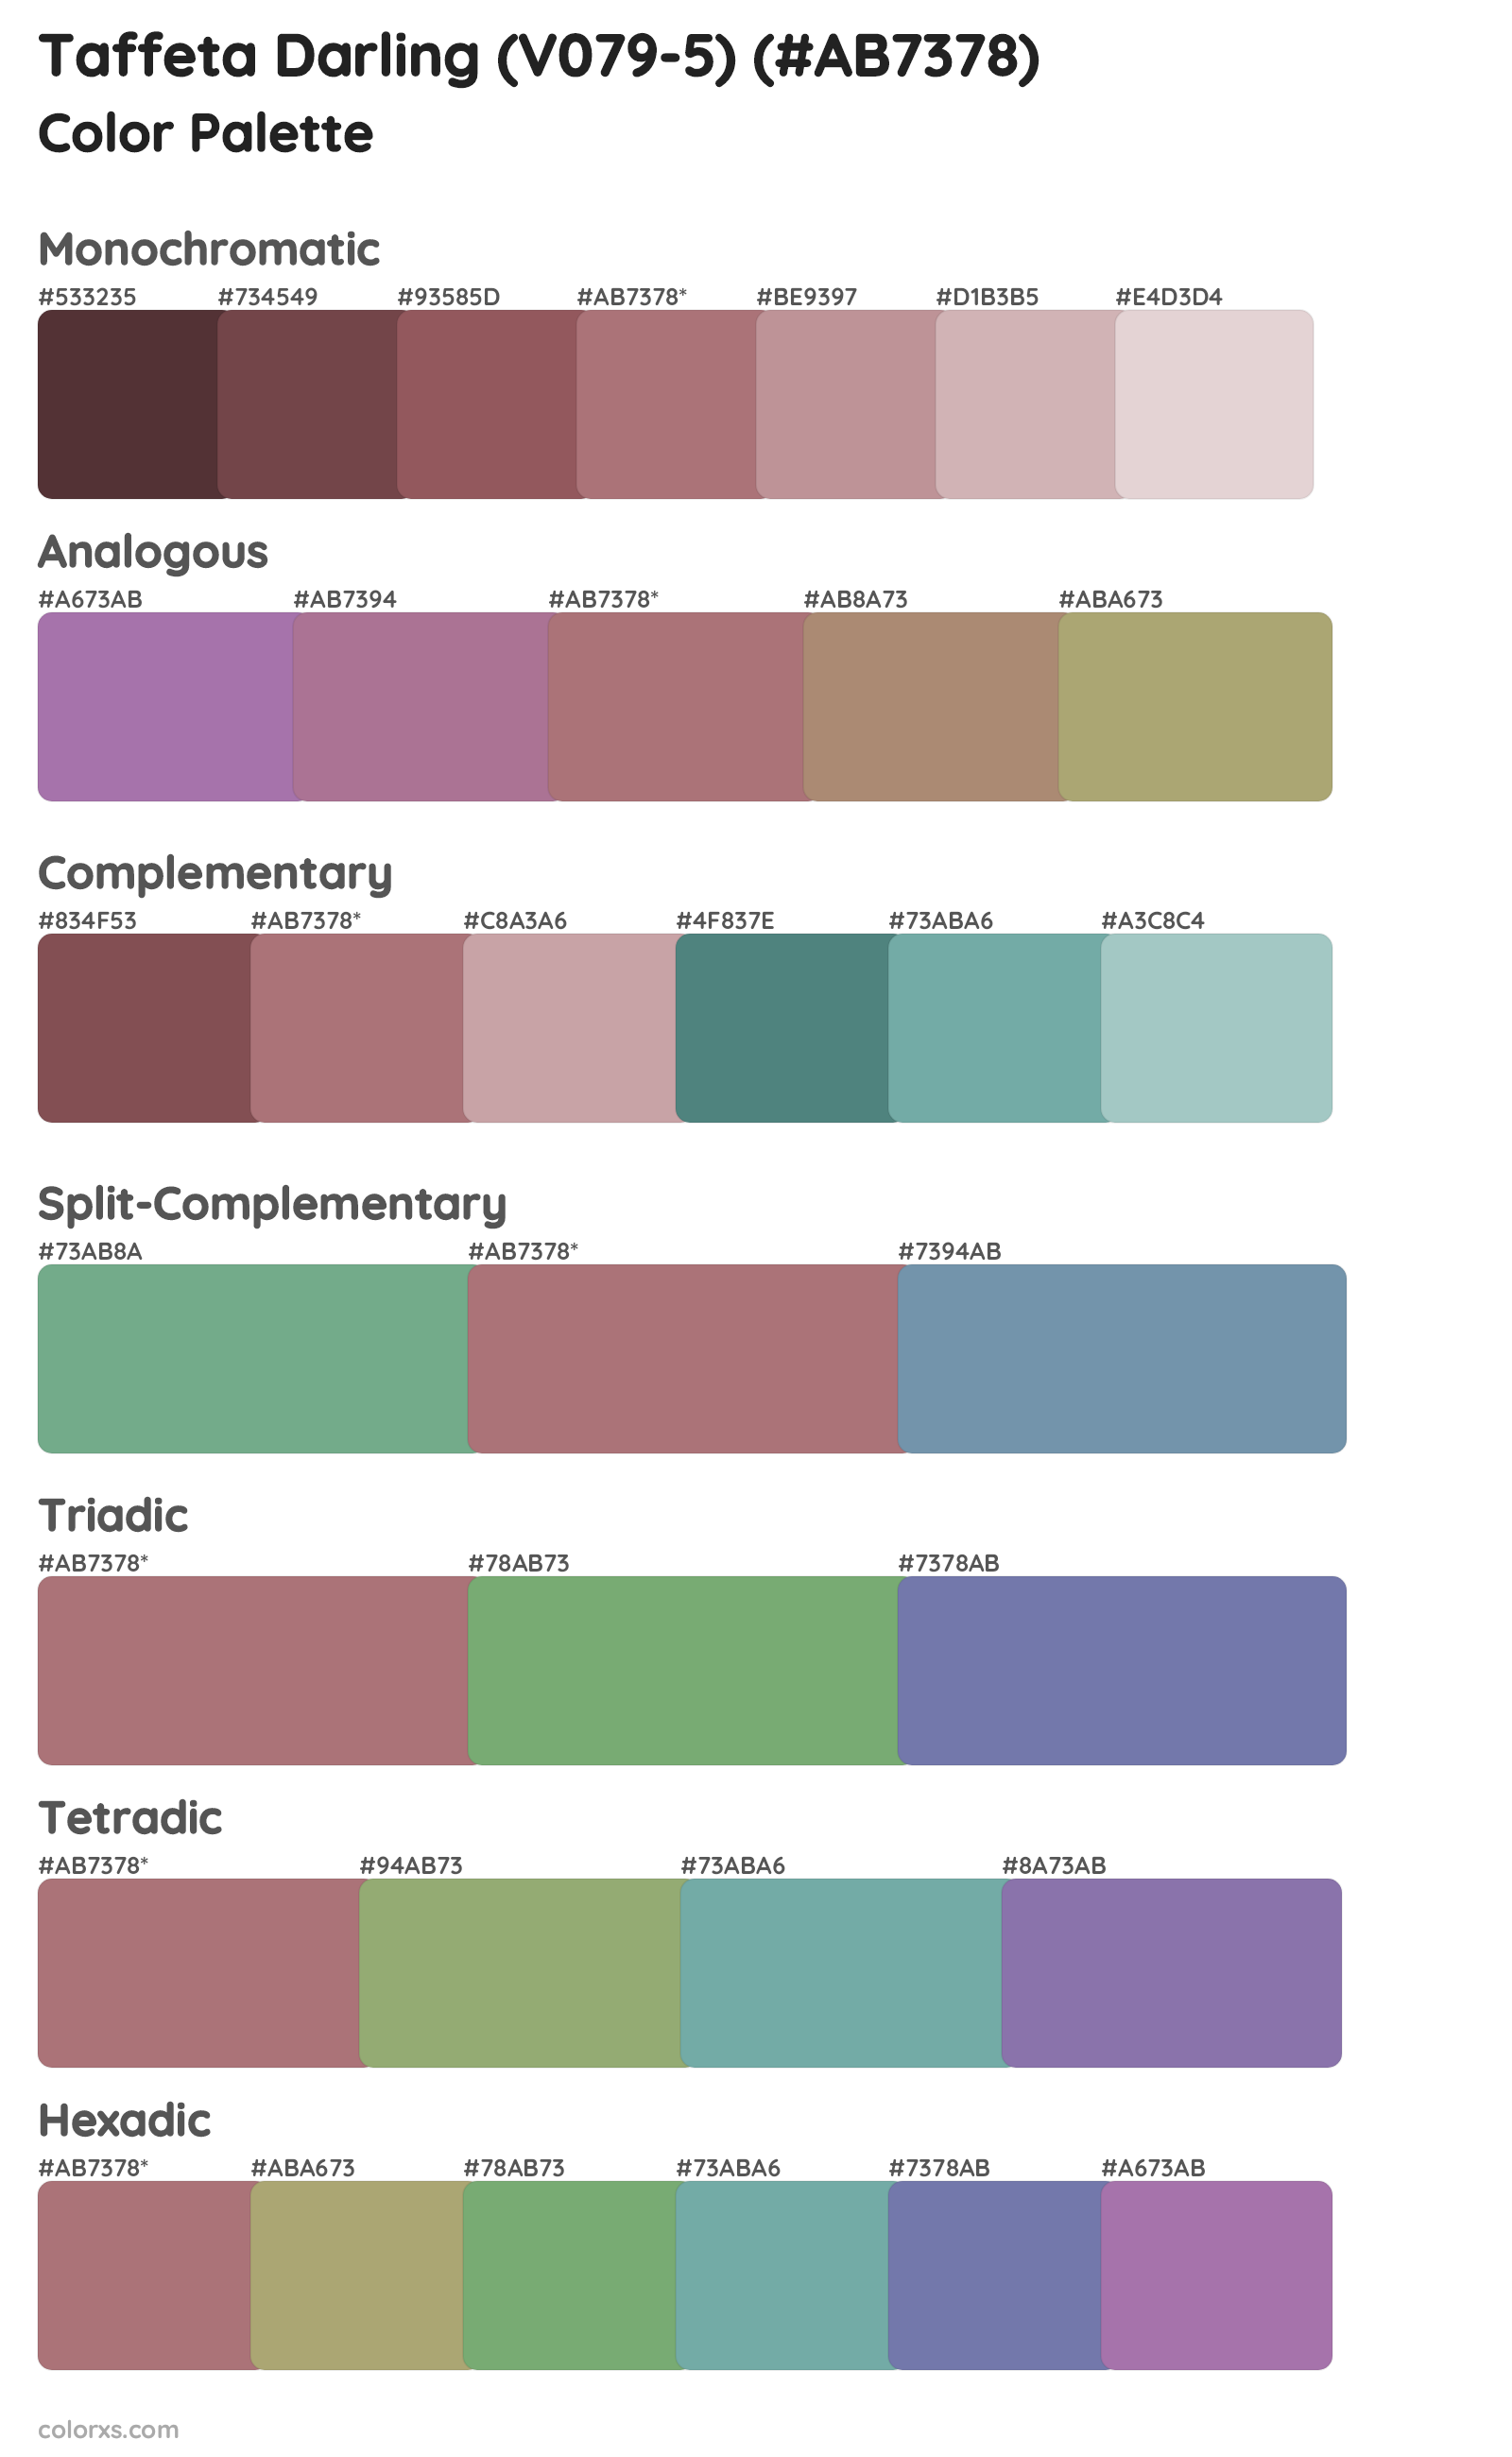 Taffeta Darling (V079-5) Color Scheme Palettes